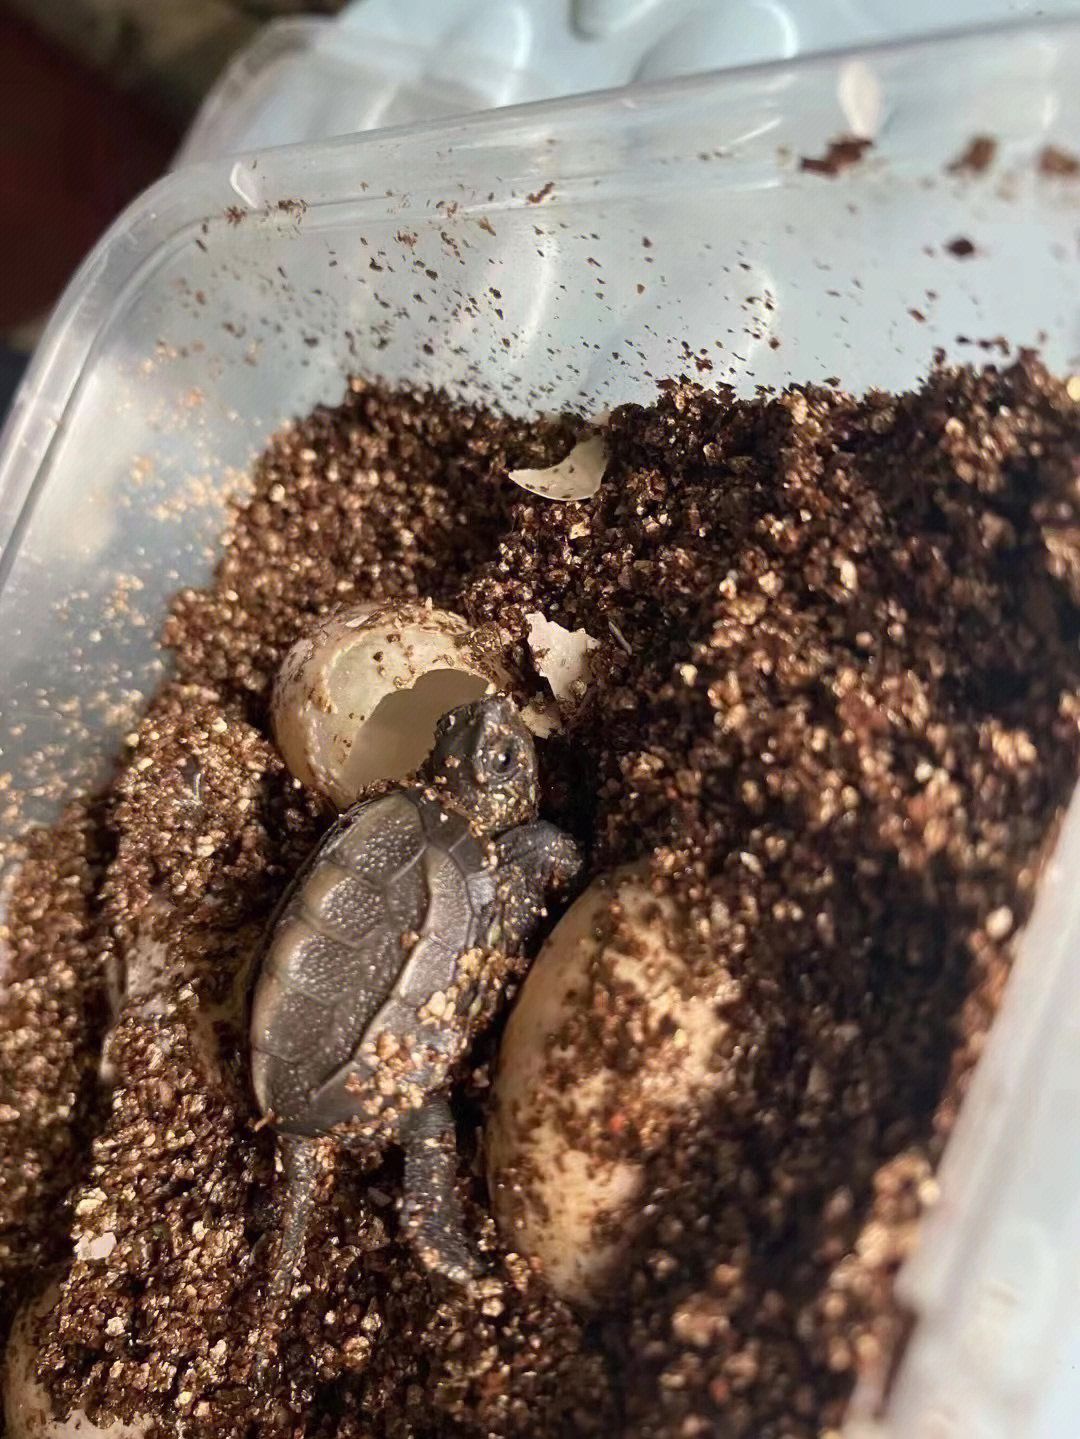 有朋友带着自己家的小朋友一起去孵化乌龟蛋,让他们等待中学会了耐心